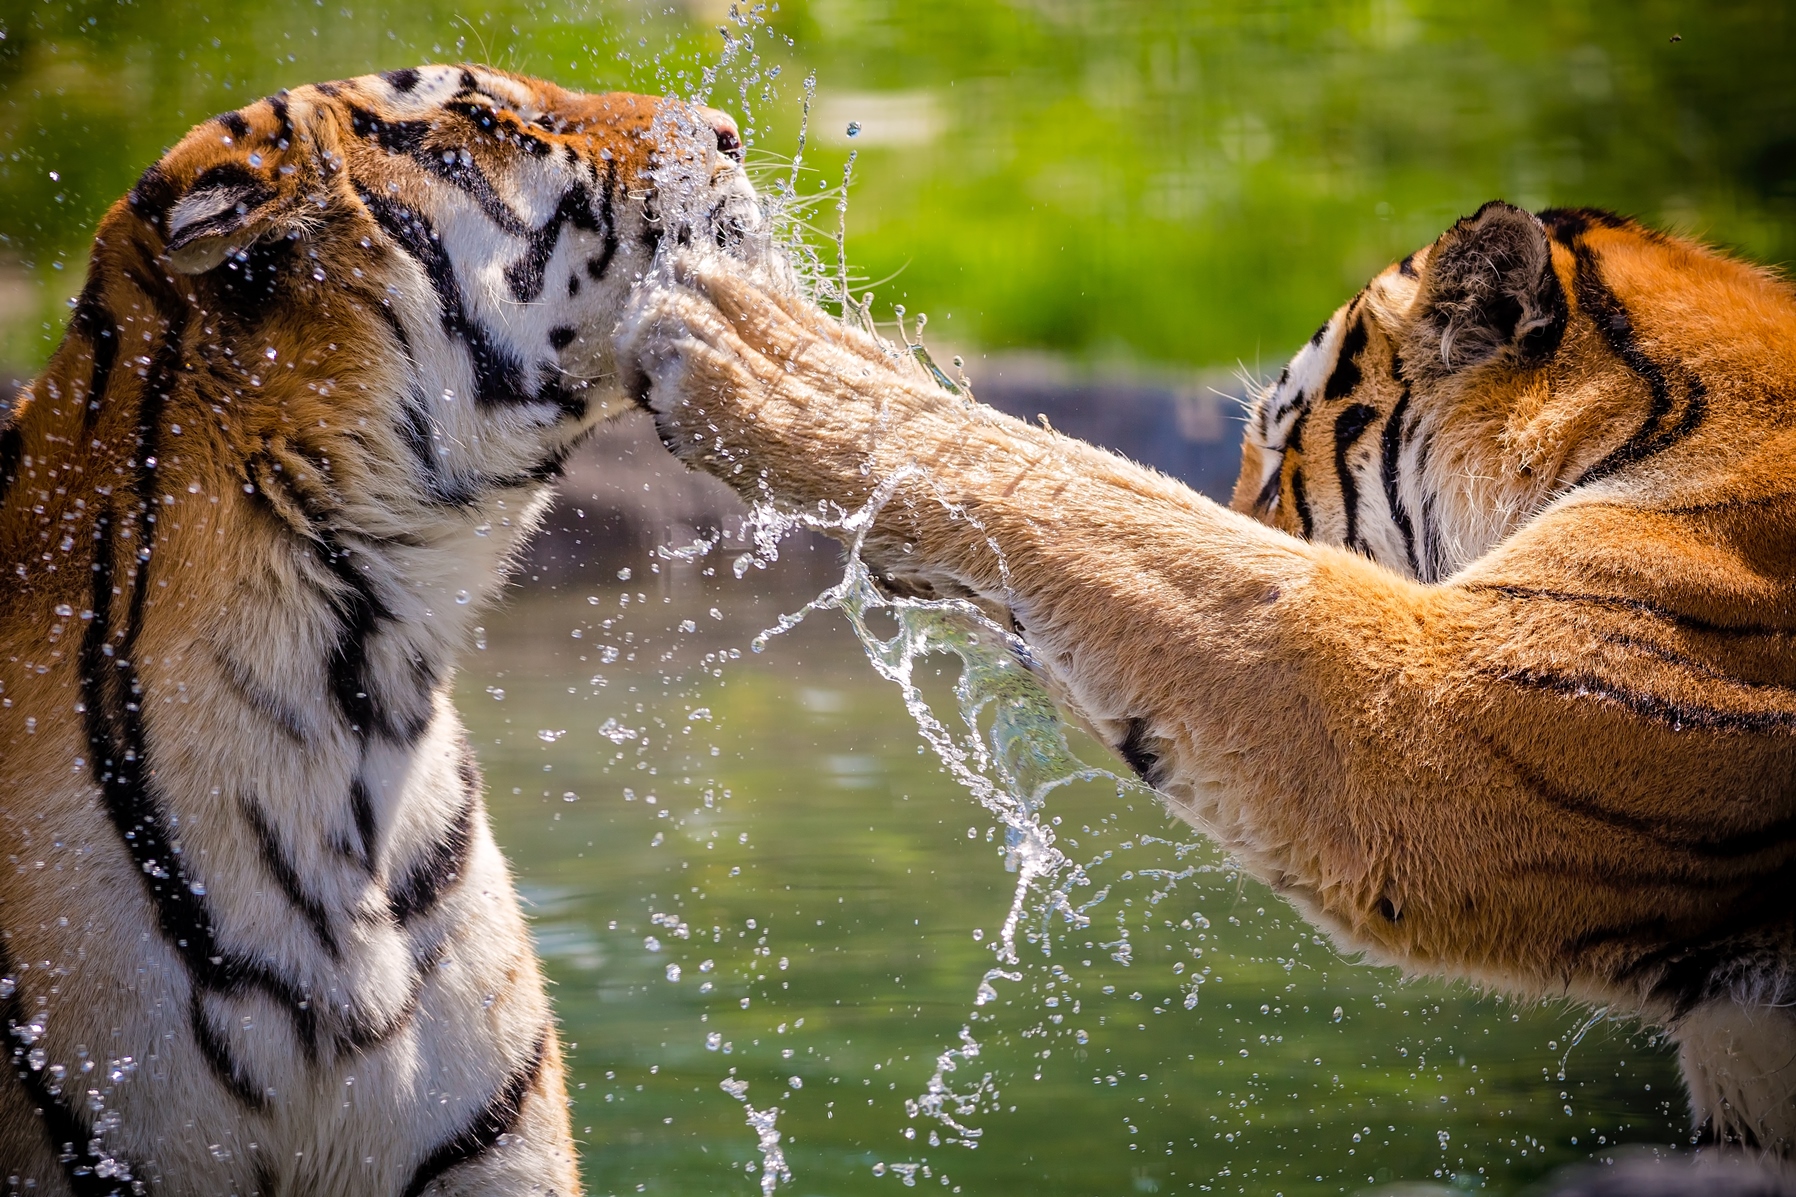 Tigers in India, India Tiger Safari